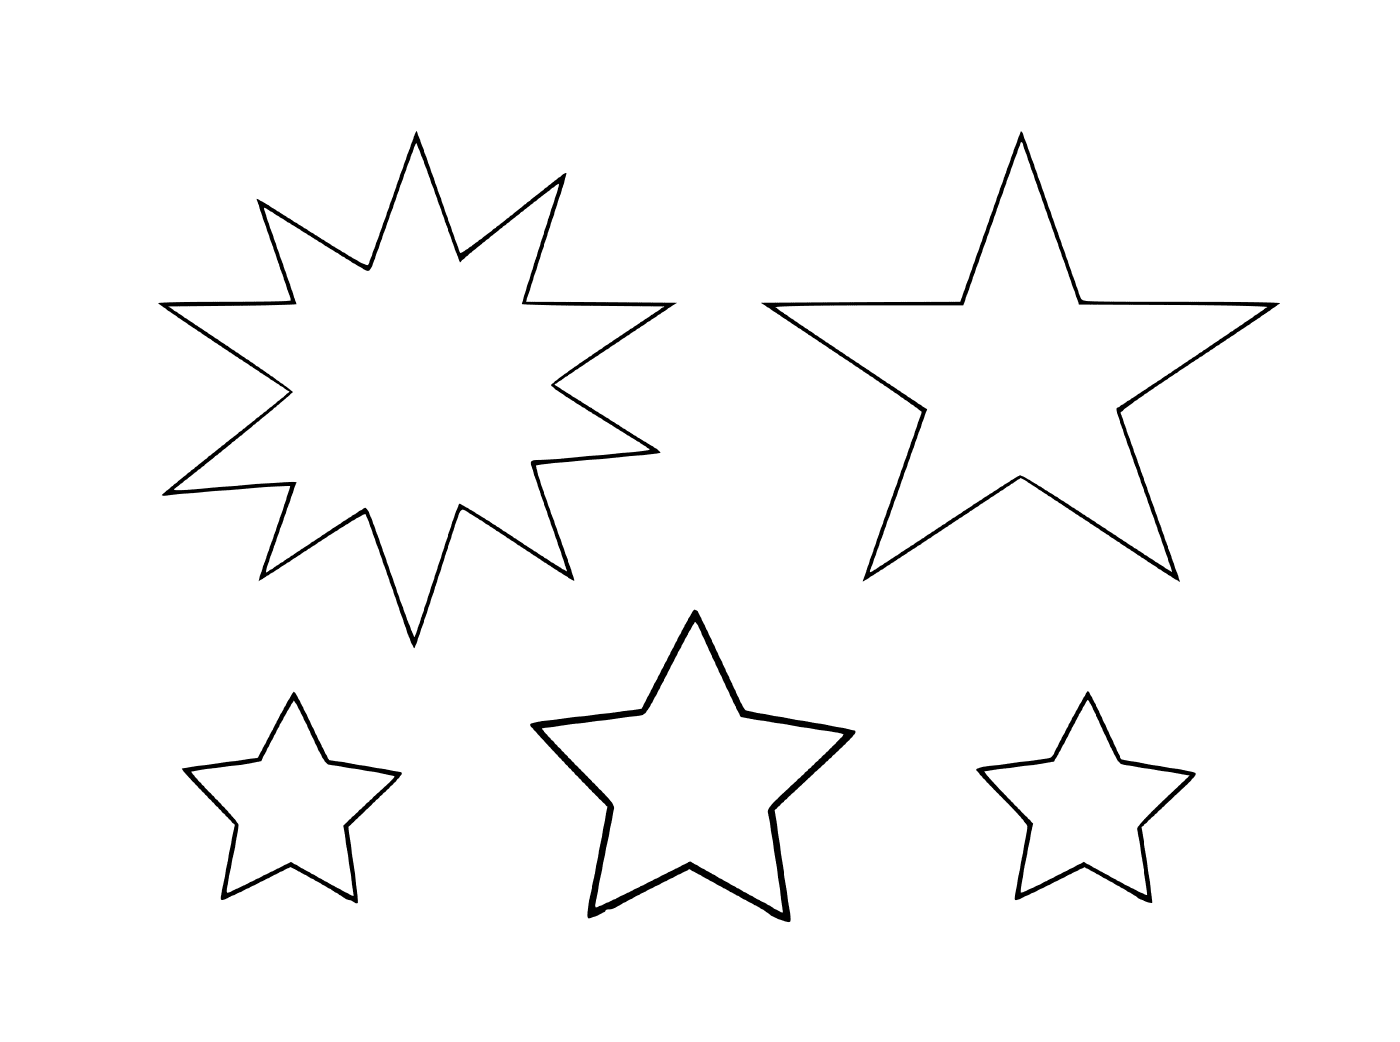  Ein Satz von sechs verschiedenen Sternen 